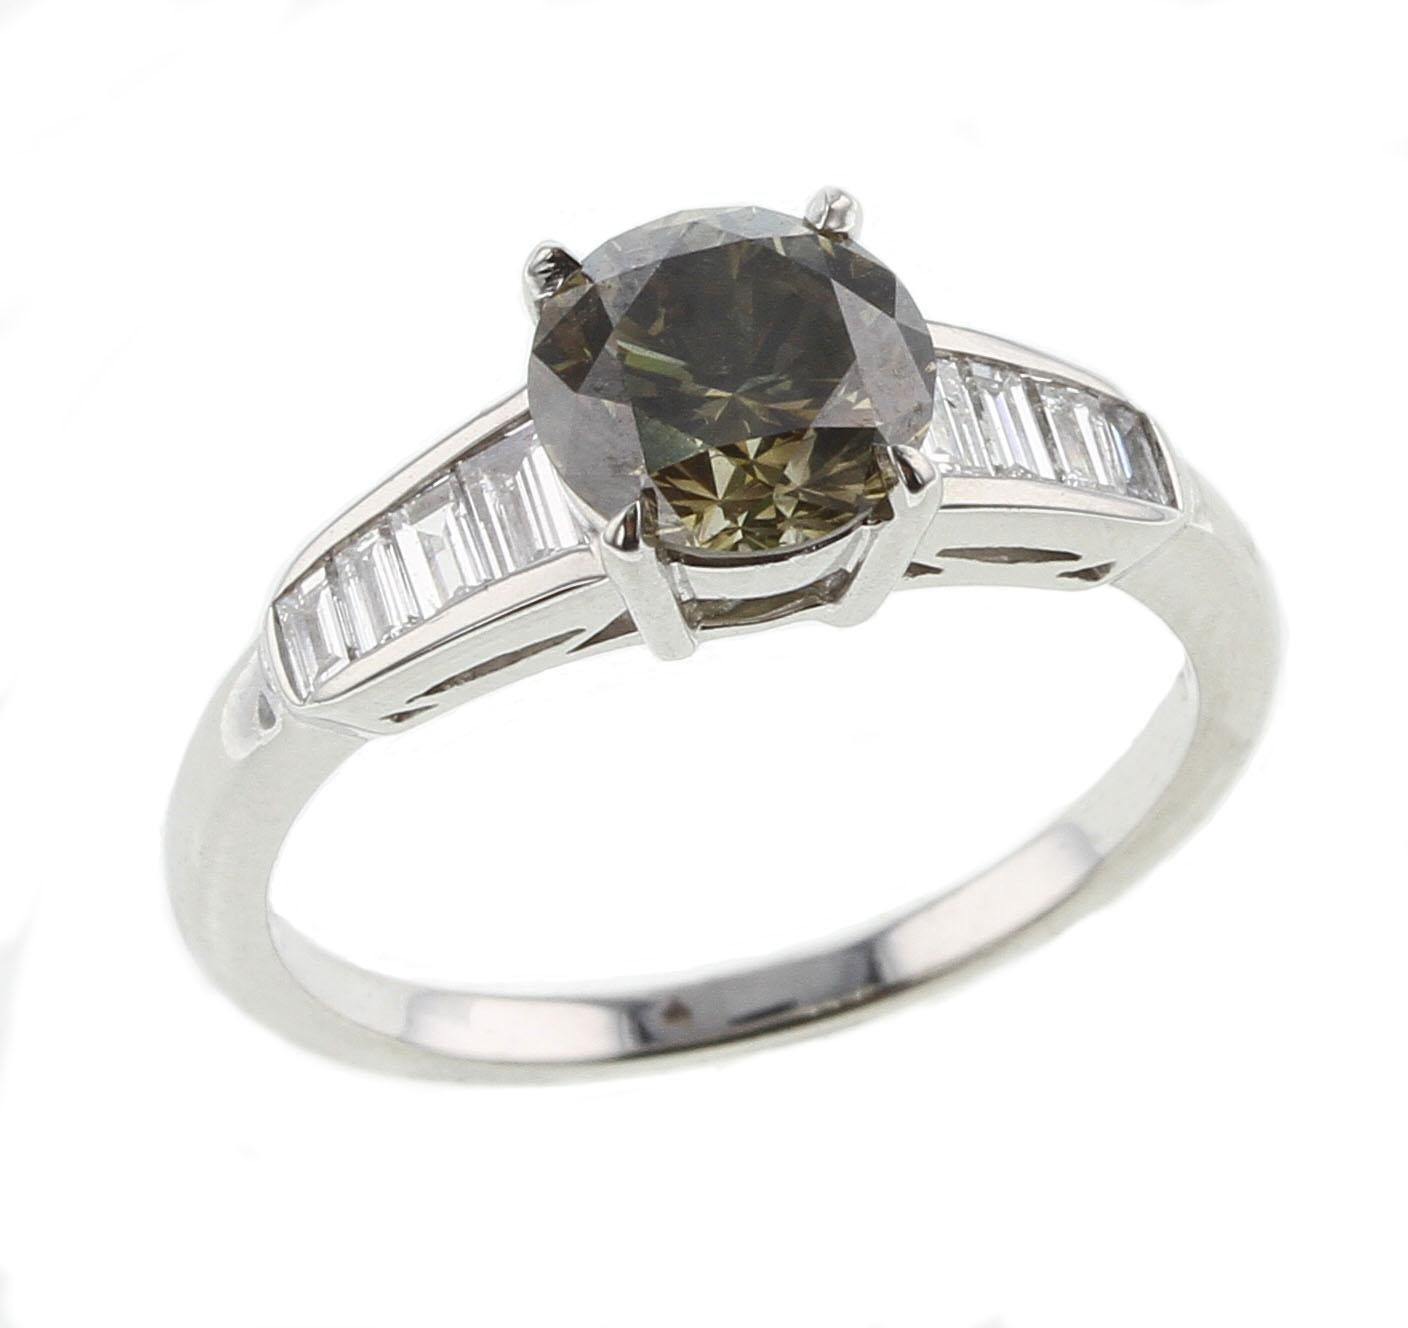 Une magnifique pierre de 1,44 ct. Bague en platine avec diamant brillant rond de couleur gris verdâtre foncé. Diamants latéraux : 0.26 ct. Certificat GIA disponible. Taille de la bague : 6.5.